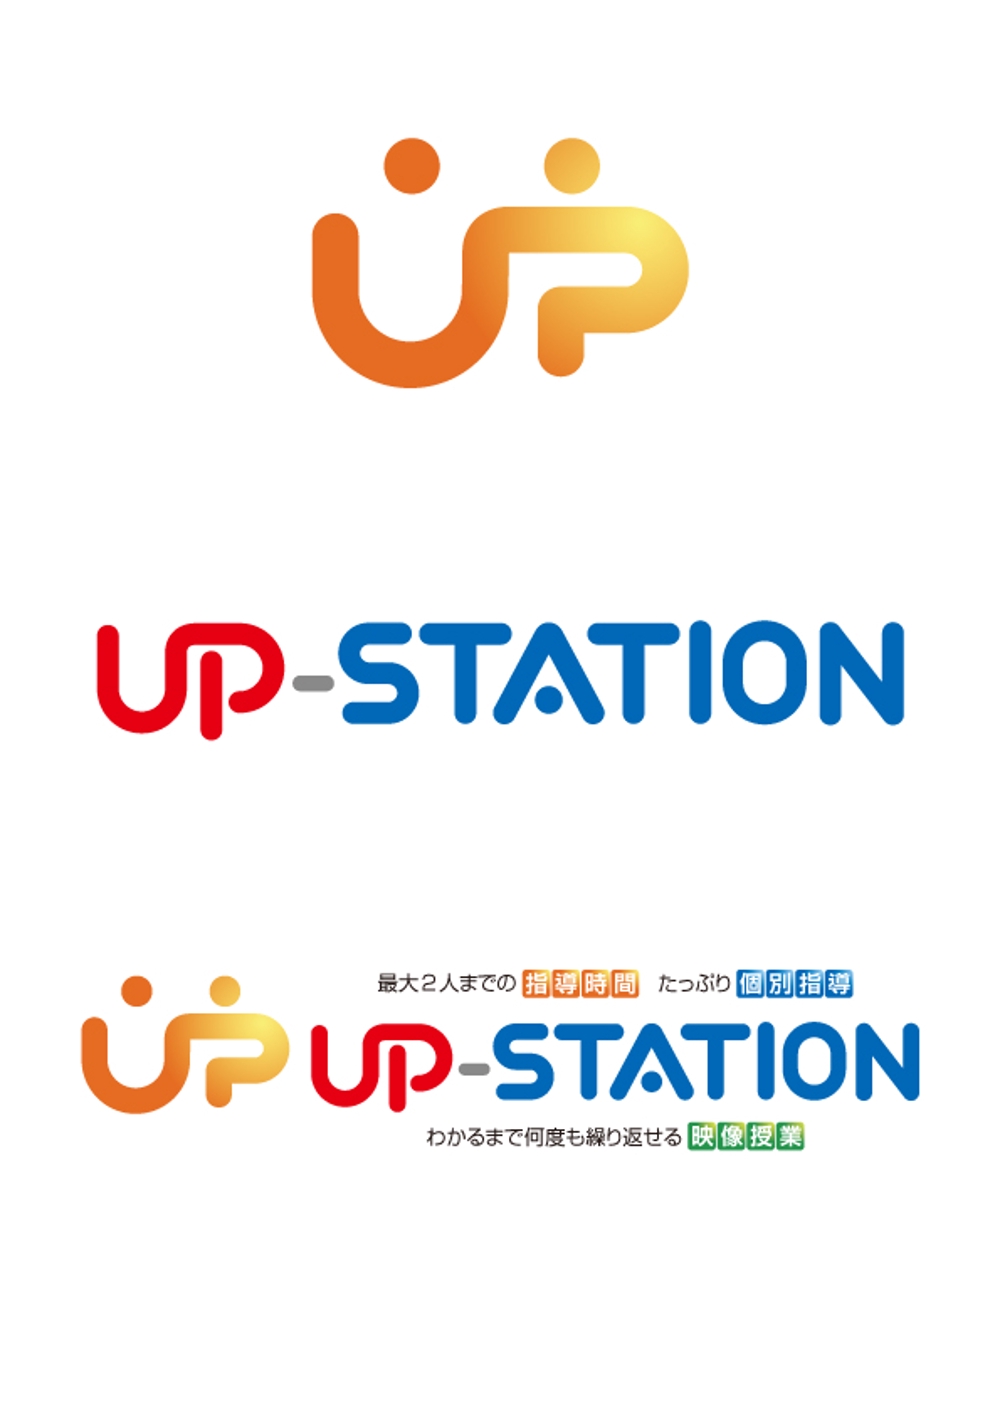 upstation.jpg